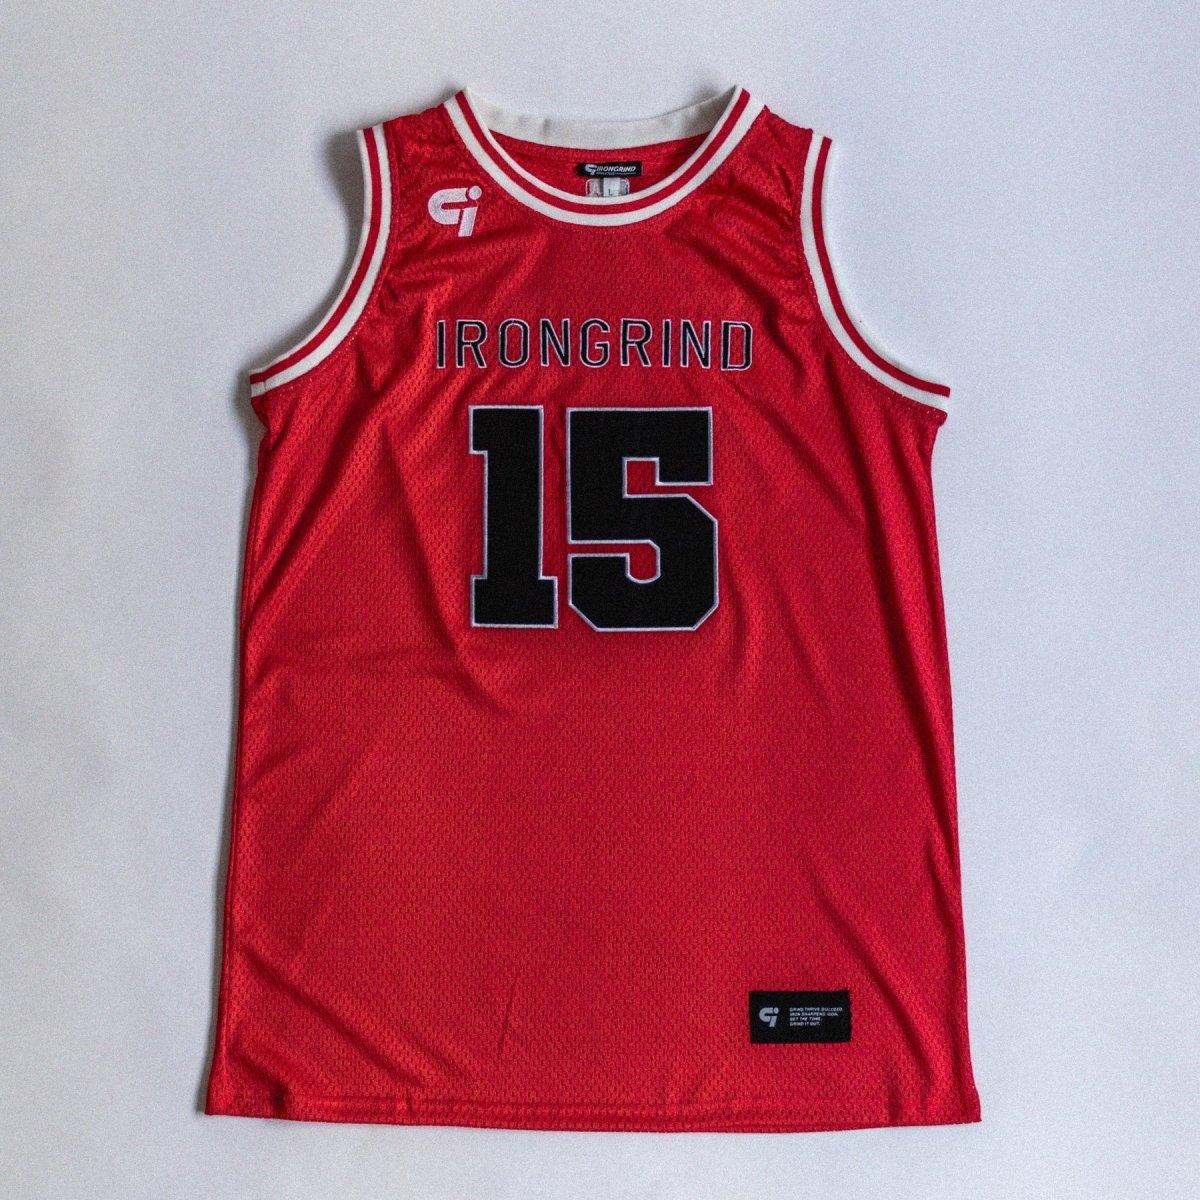 TS 2 Basketball Jersey - IronGrind Athletics - activewear - gymshark - alphalete